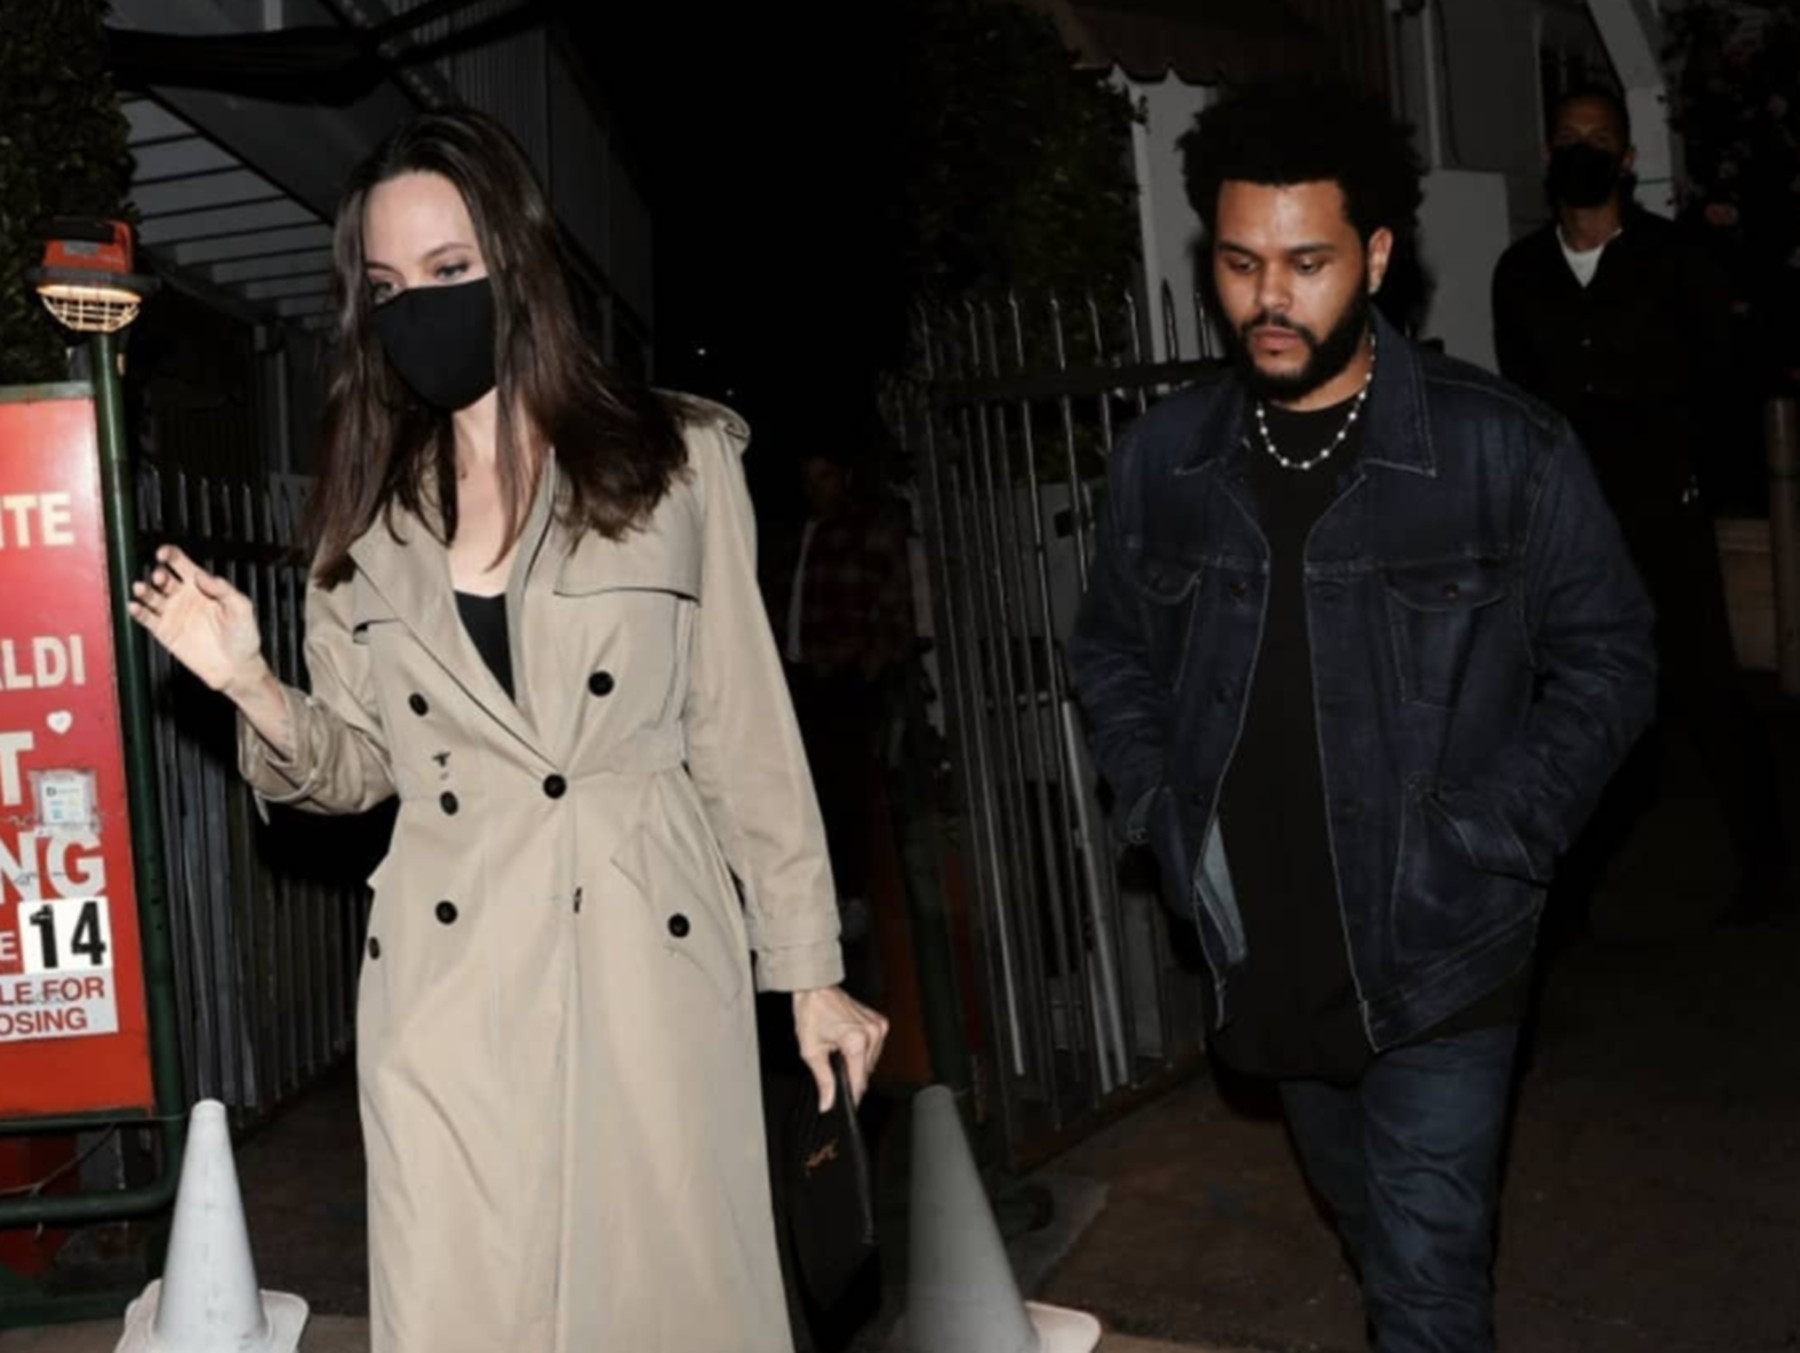 Ατζελίνα Τζολί – Weeknd: Έντονες φήμες για ερωτική σχέση μεταξύ τους